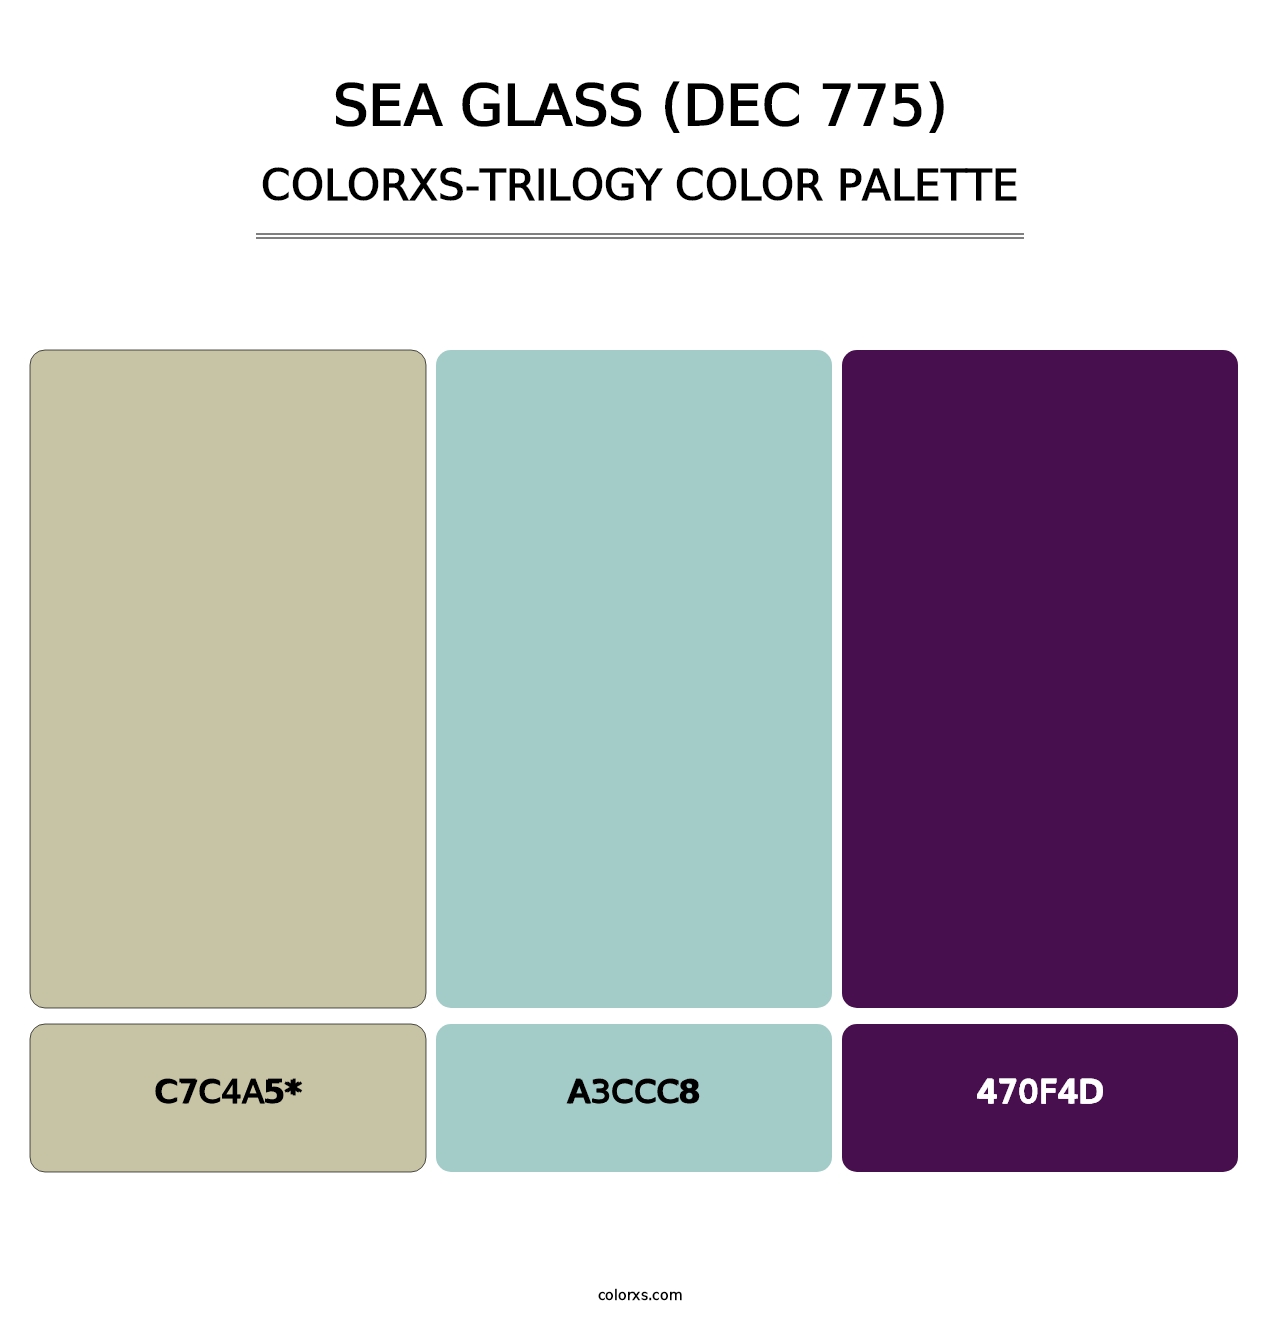 Sea Glass (DEC 775) - Colorxs Trilogy Palette